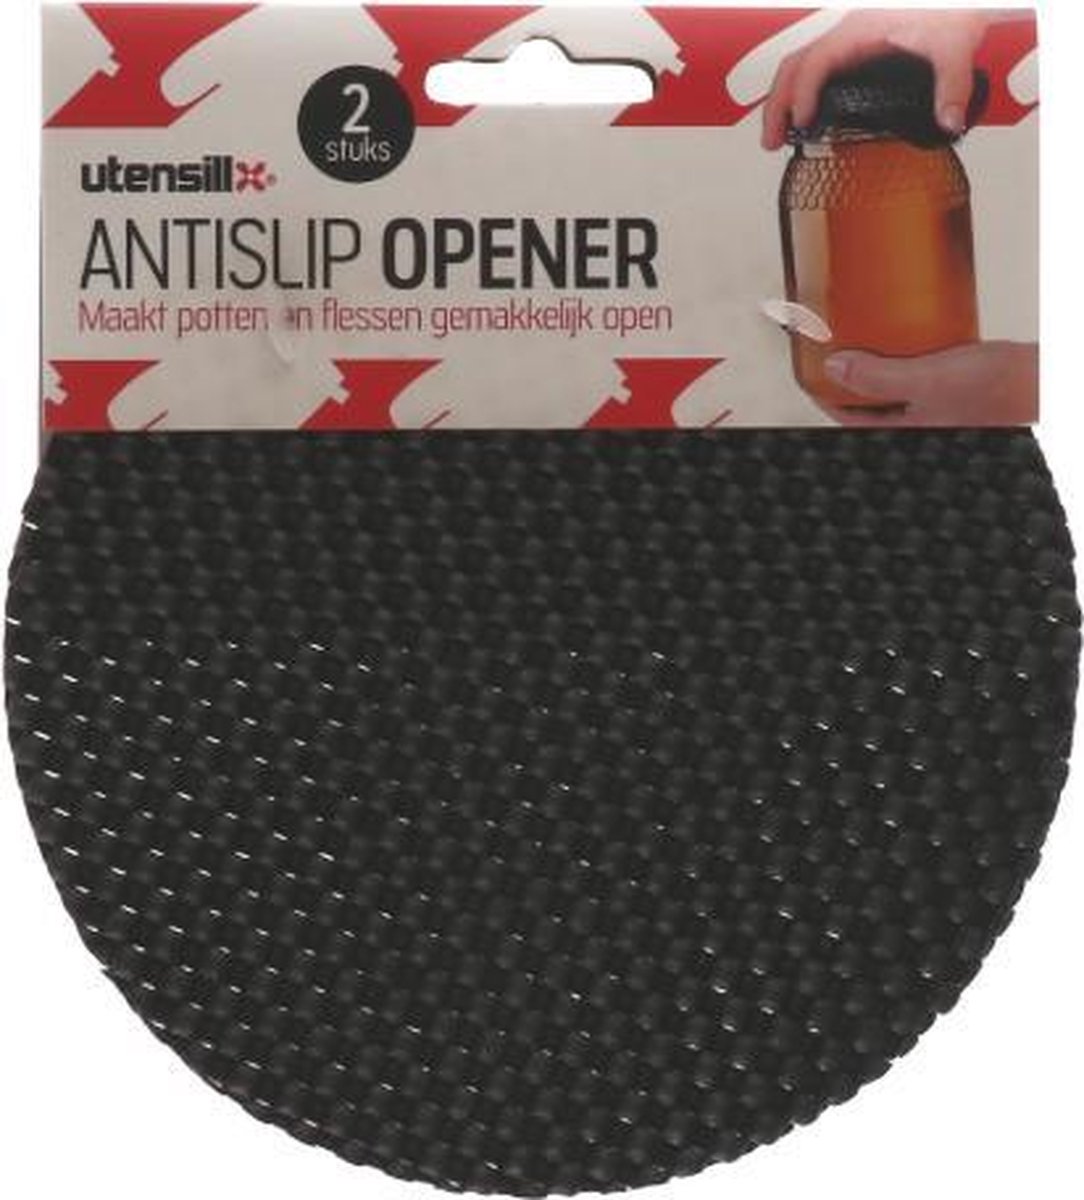 Antislip opener - Maak potten en flessen gemakkelijk open - 2 stuks - Utensill